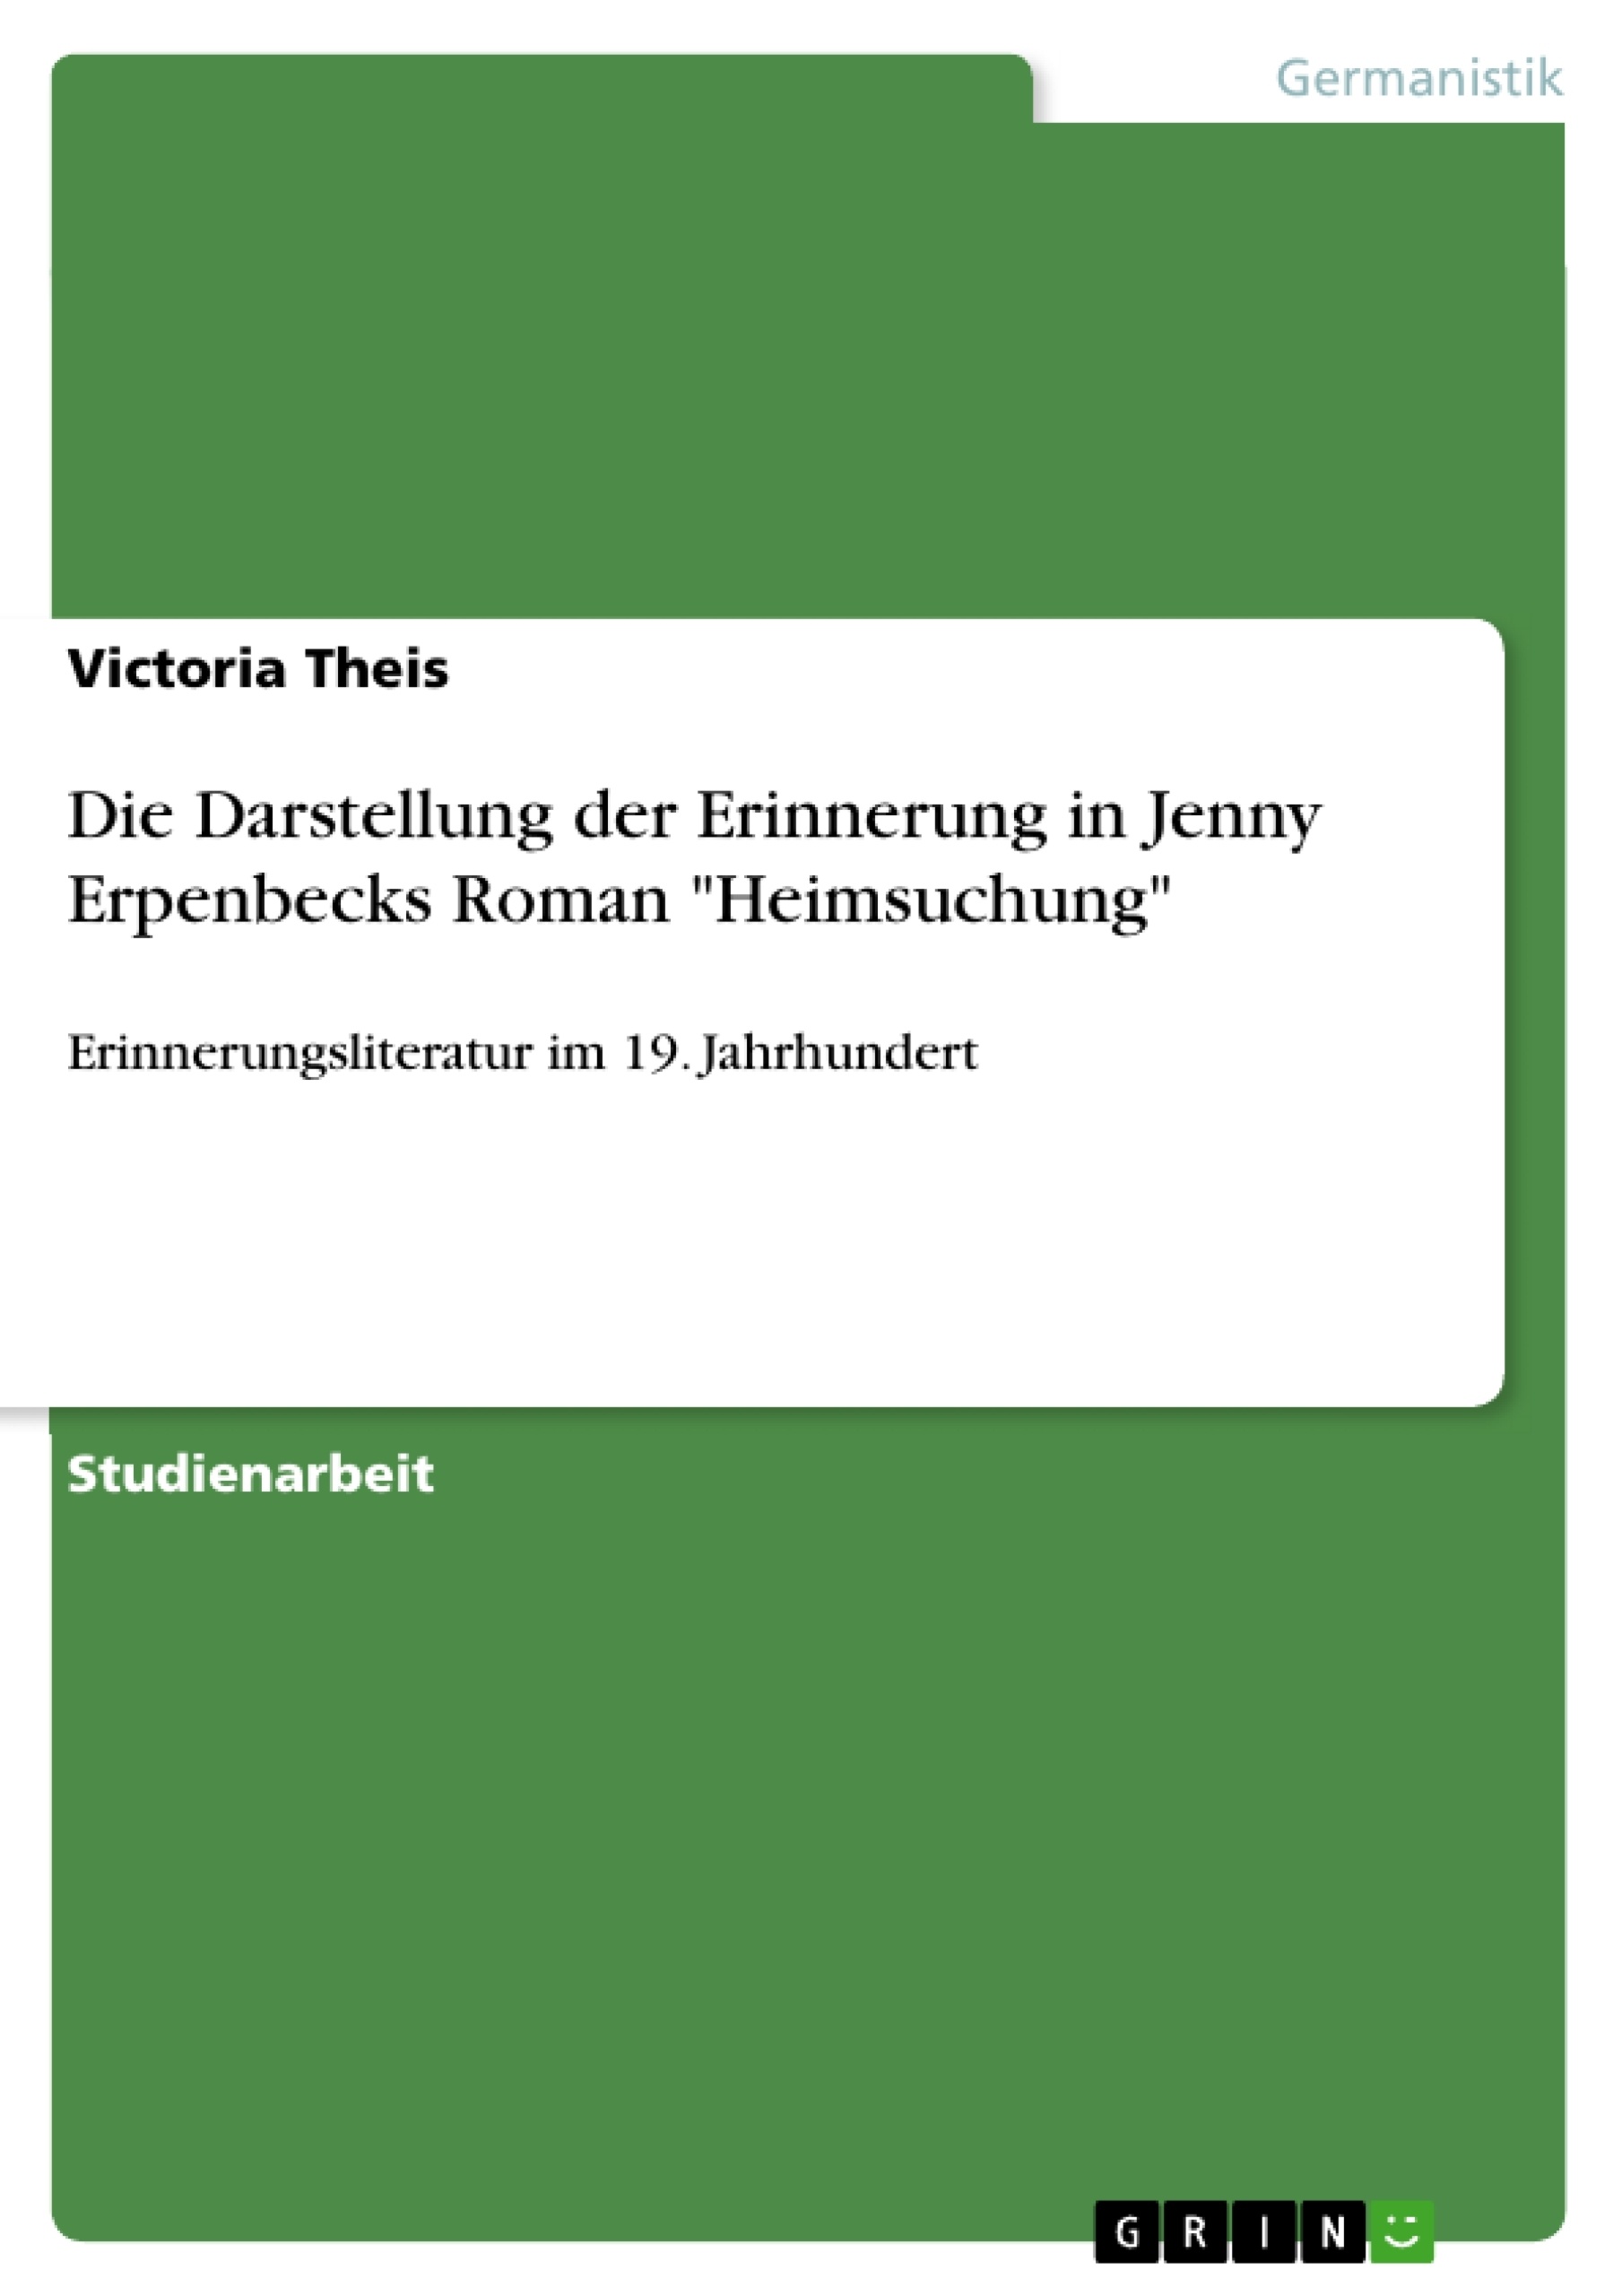 Título: Die Darstellung der Erinnerung in Jenny Erpenbecks Roman "Heimsuchung"